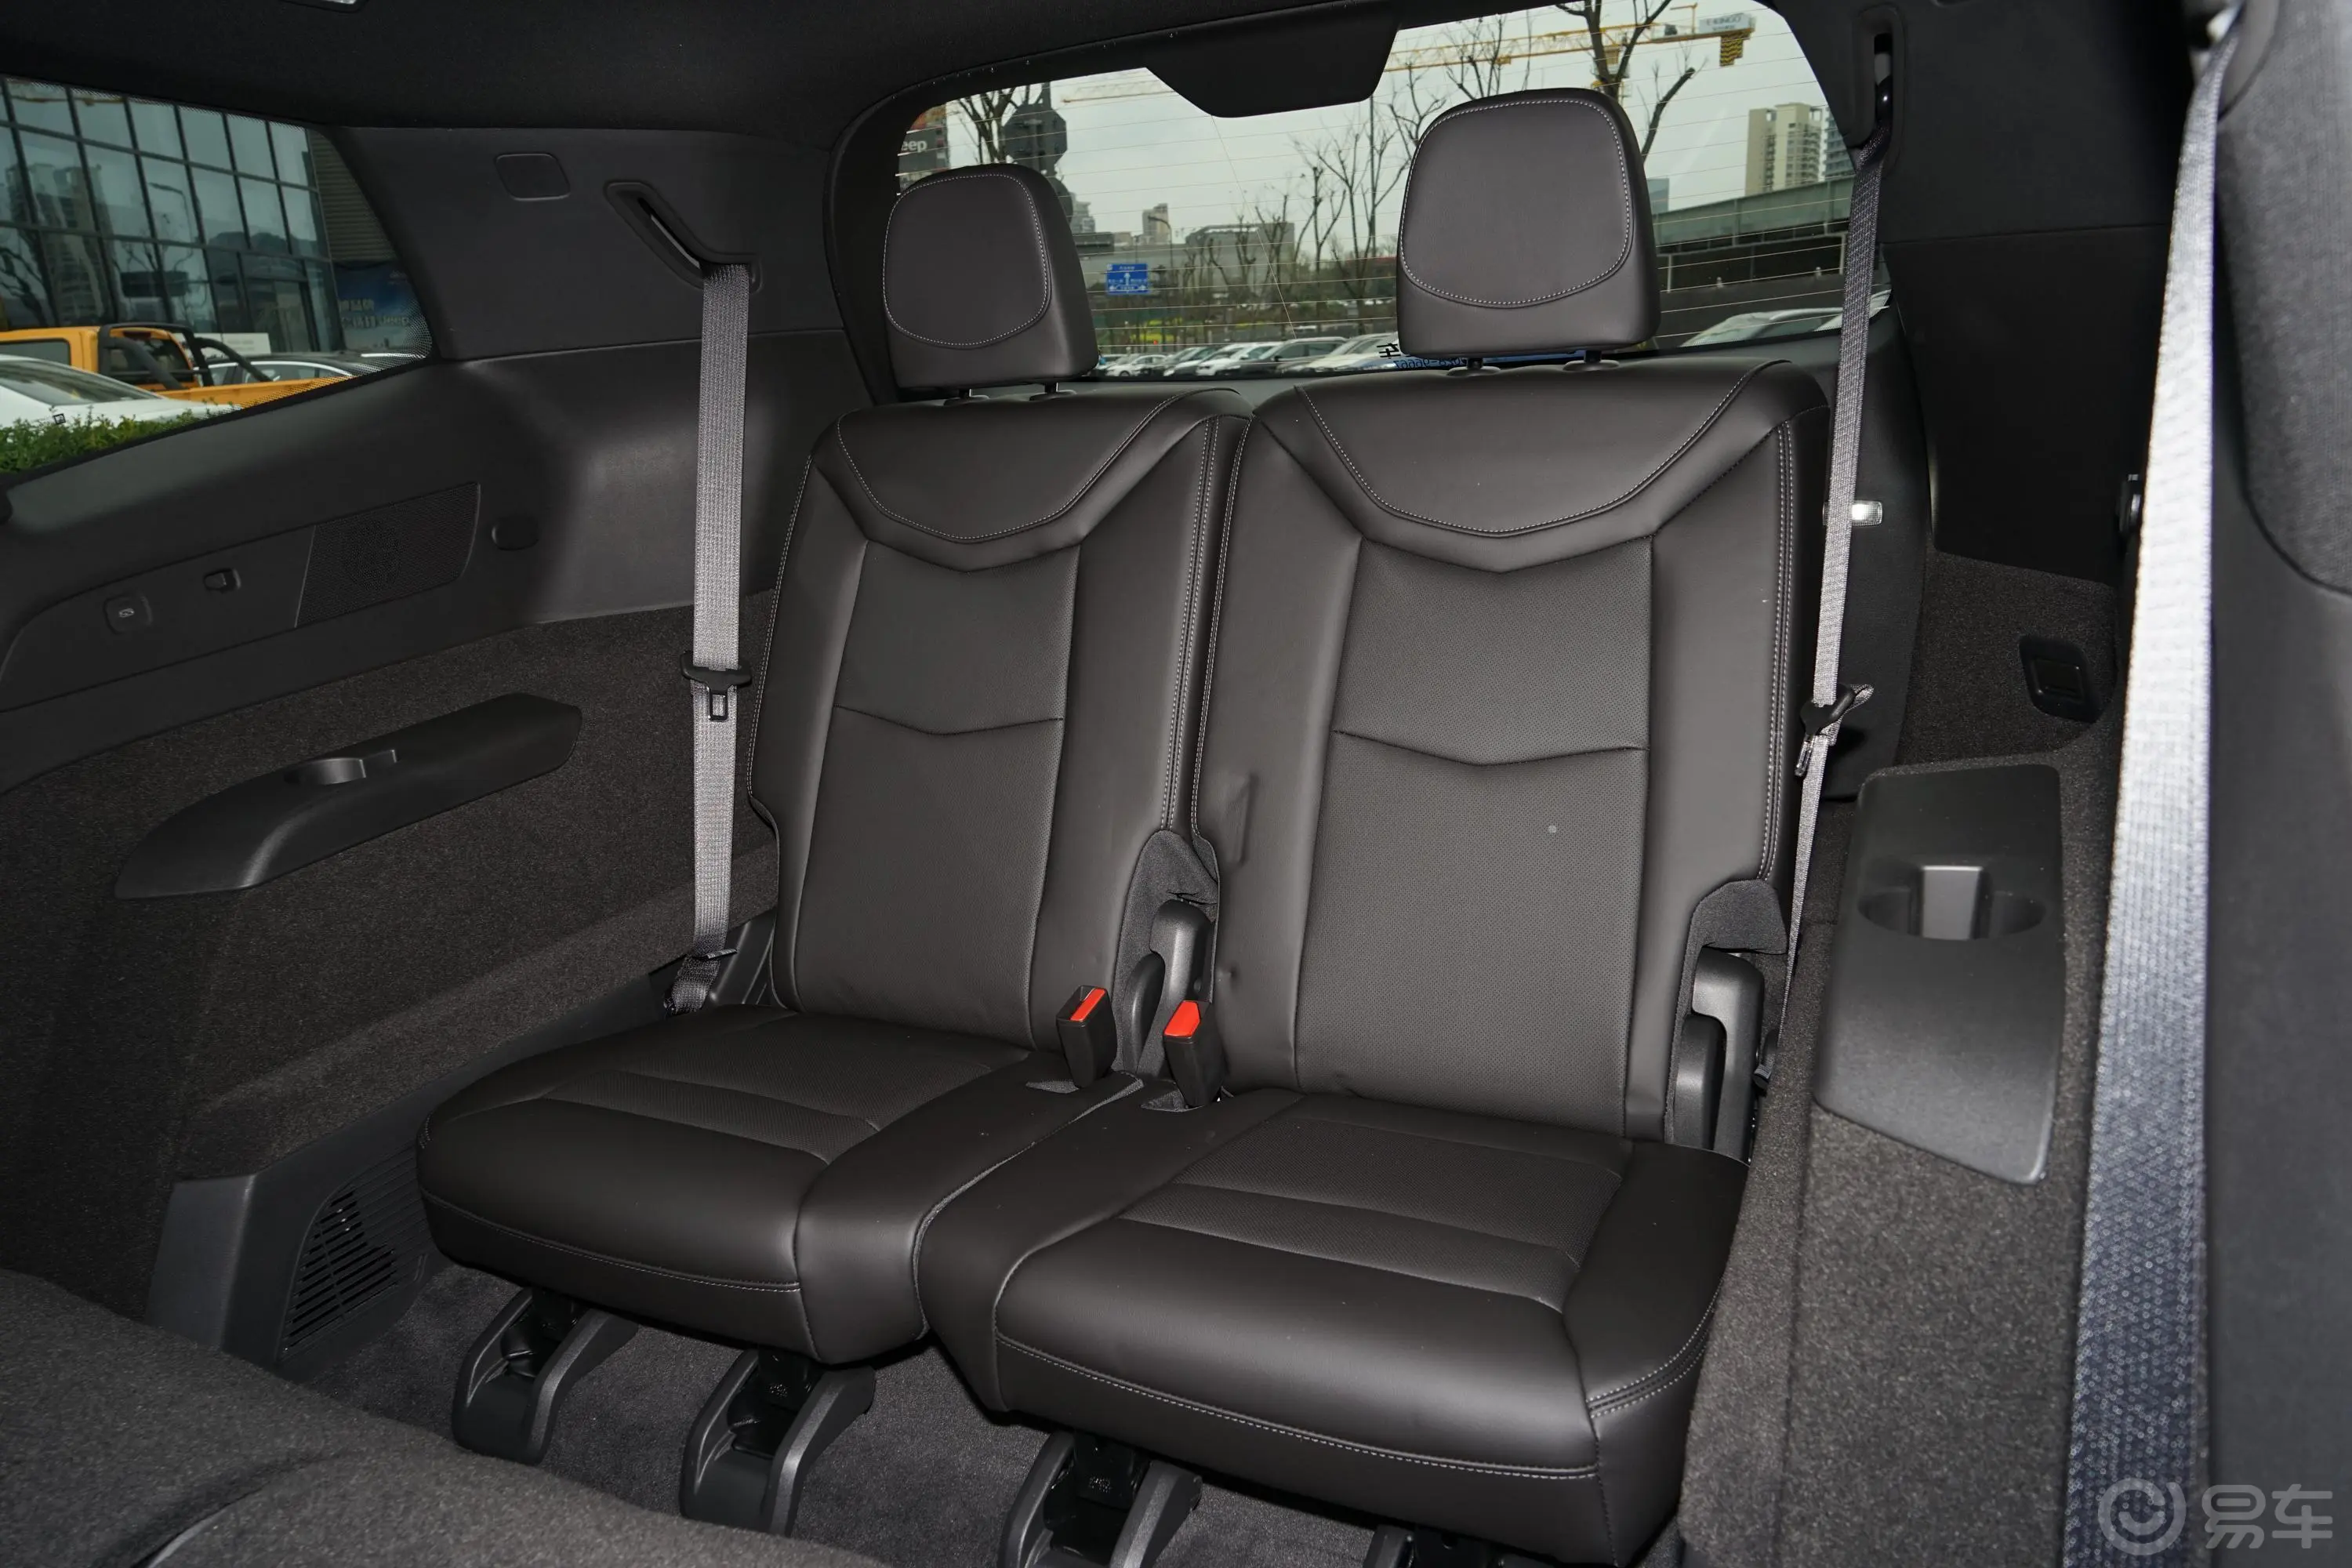 凯迪拉克XT62.0T 轻混 四驱豪华型 7座第三排座椅